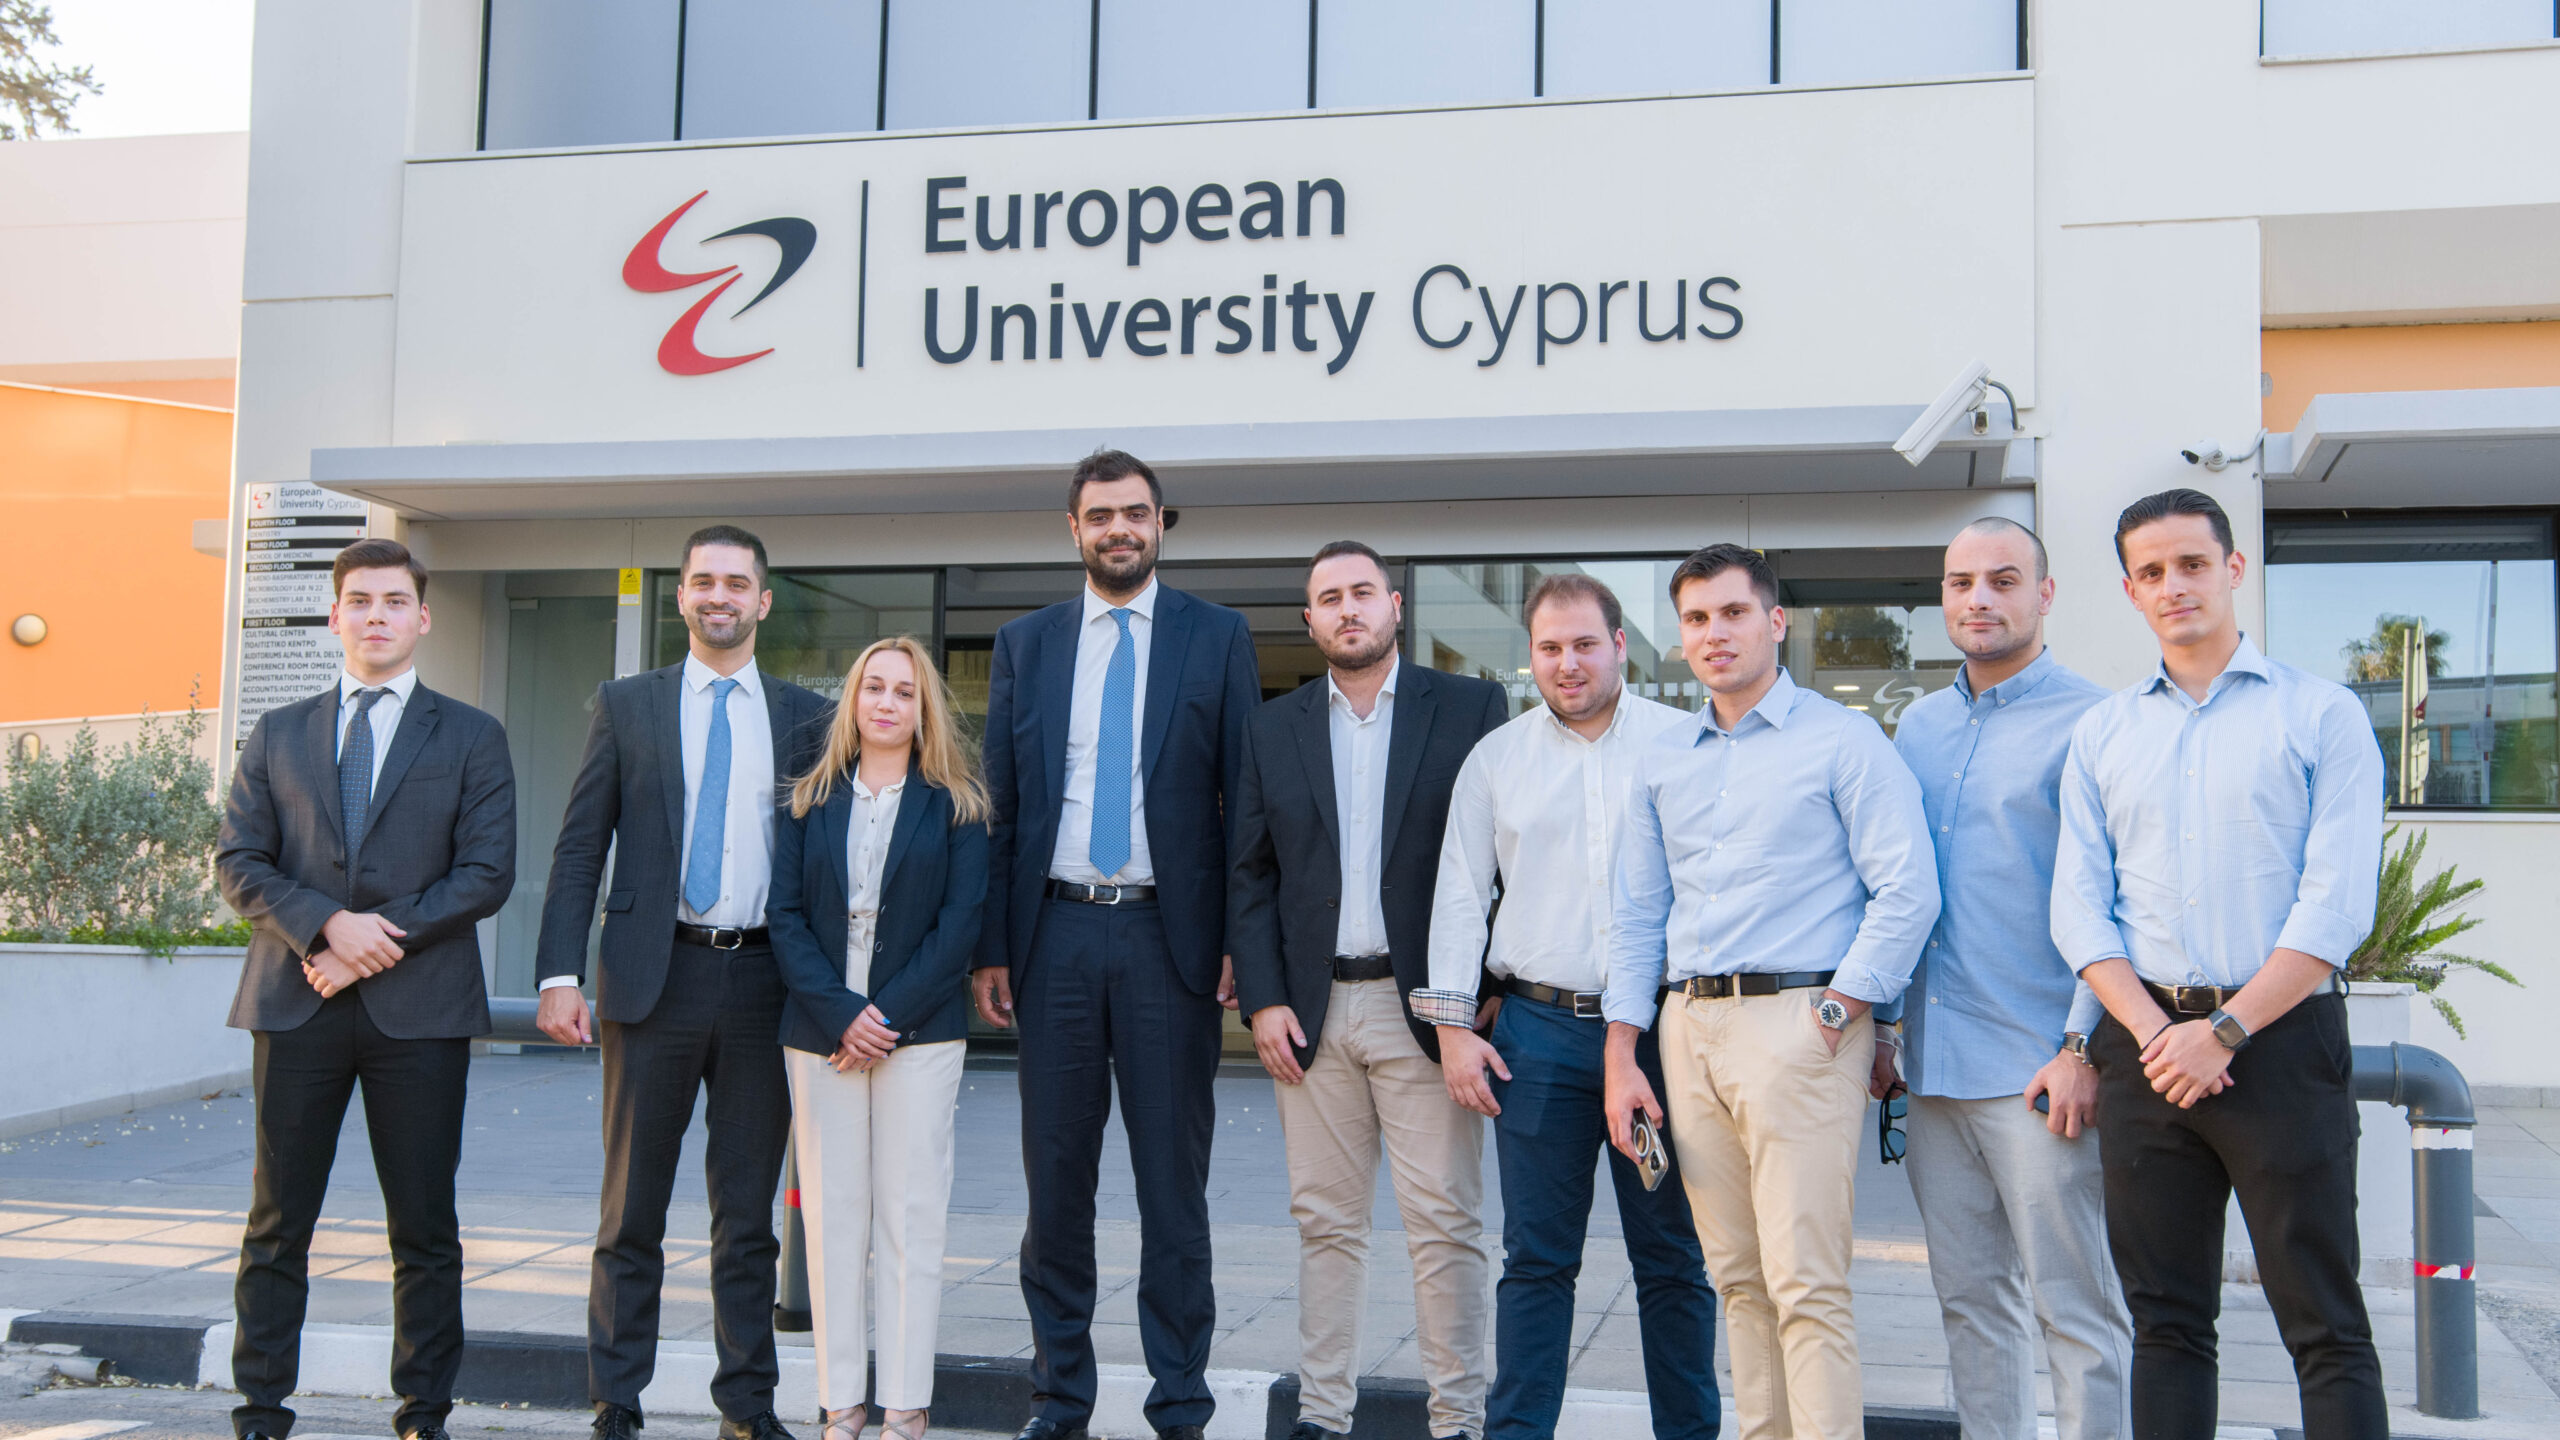 Συνάντηση του Γραμματέα της Πολιτικής Επιτροπής της Νέας Δημοκρατίας Παύλου Μαρινάκη με στελέχη επιχειρήσεων και φοιτητές  στο Ευρωπαϊκό Πανεπιστήμιο Κύπρου